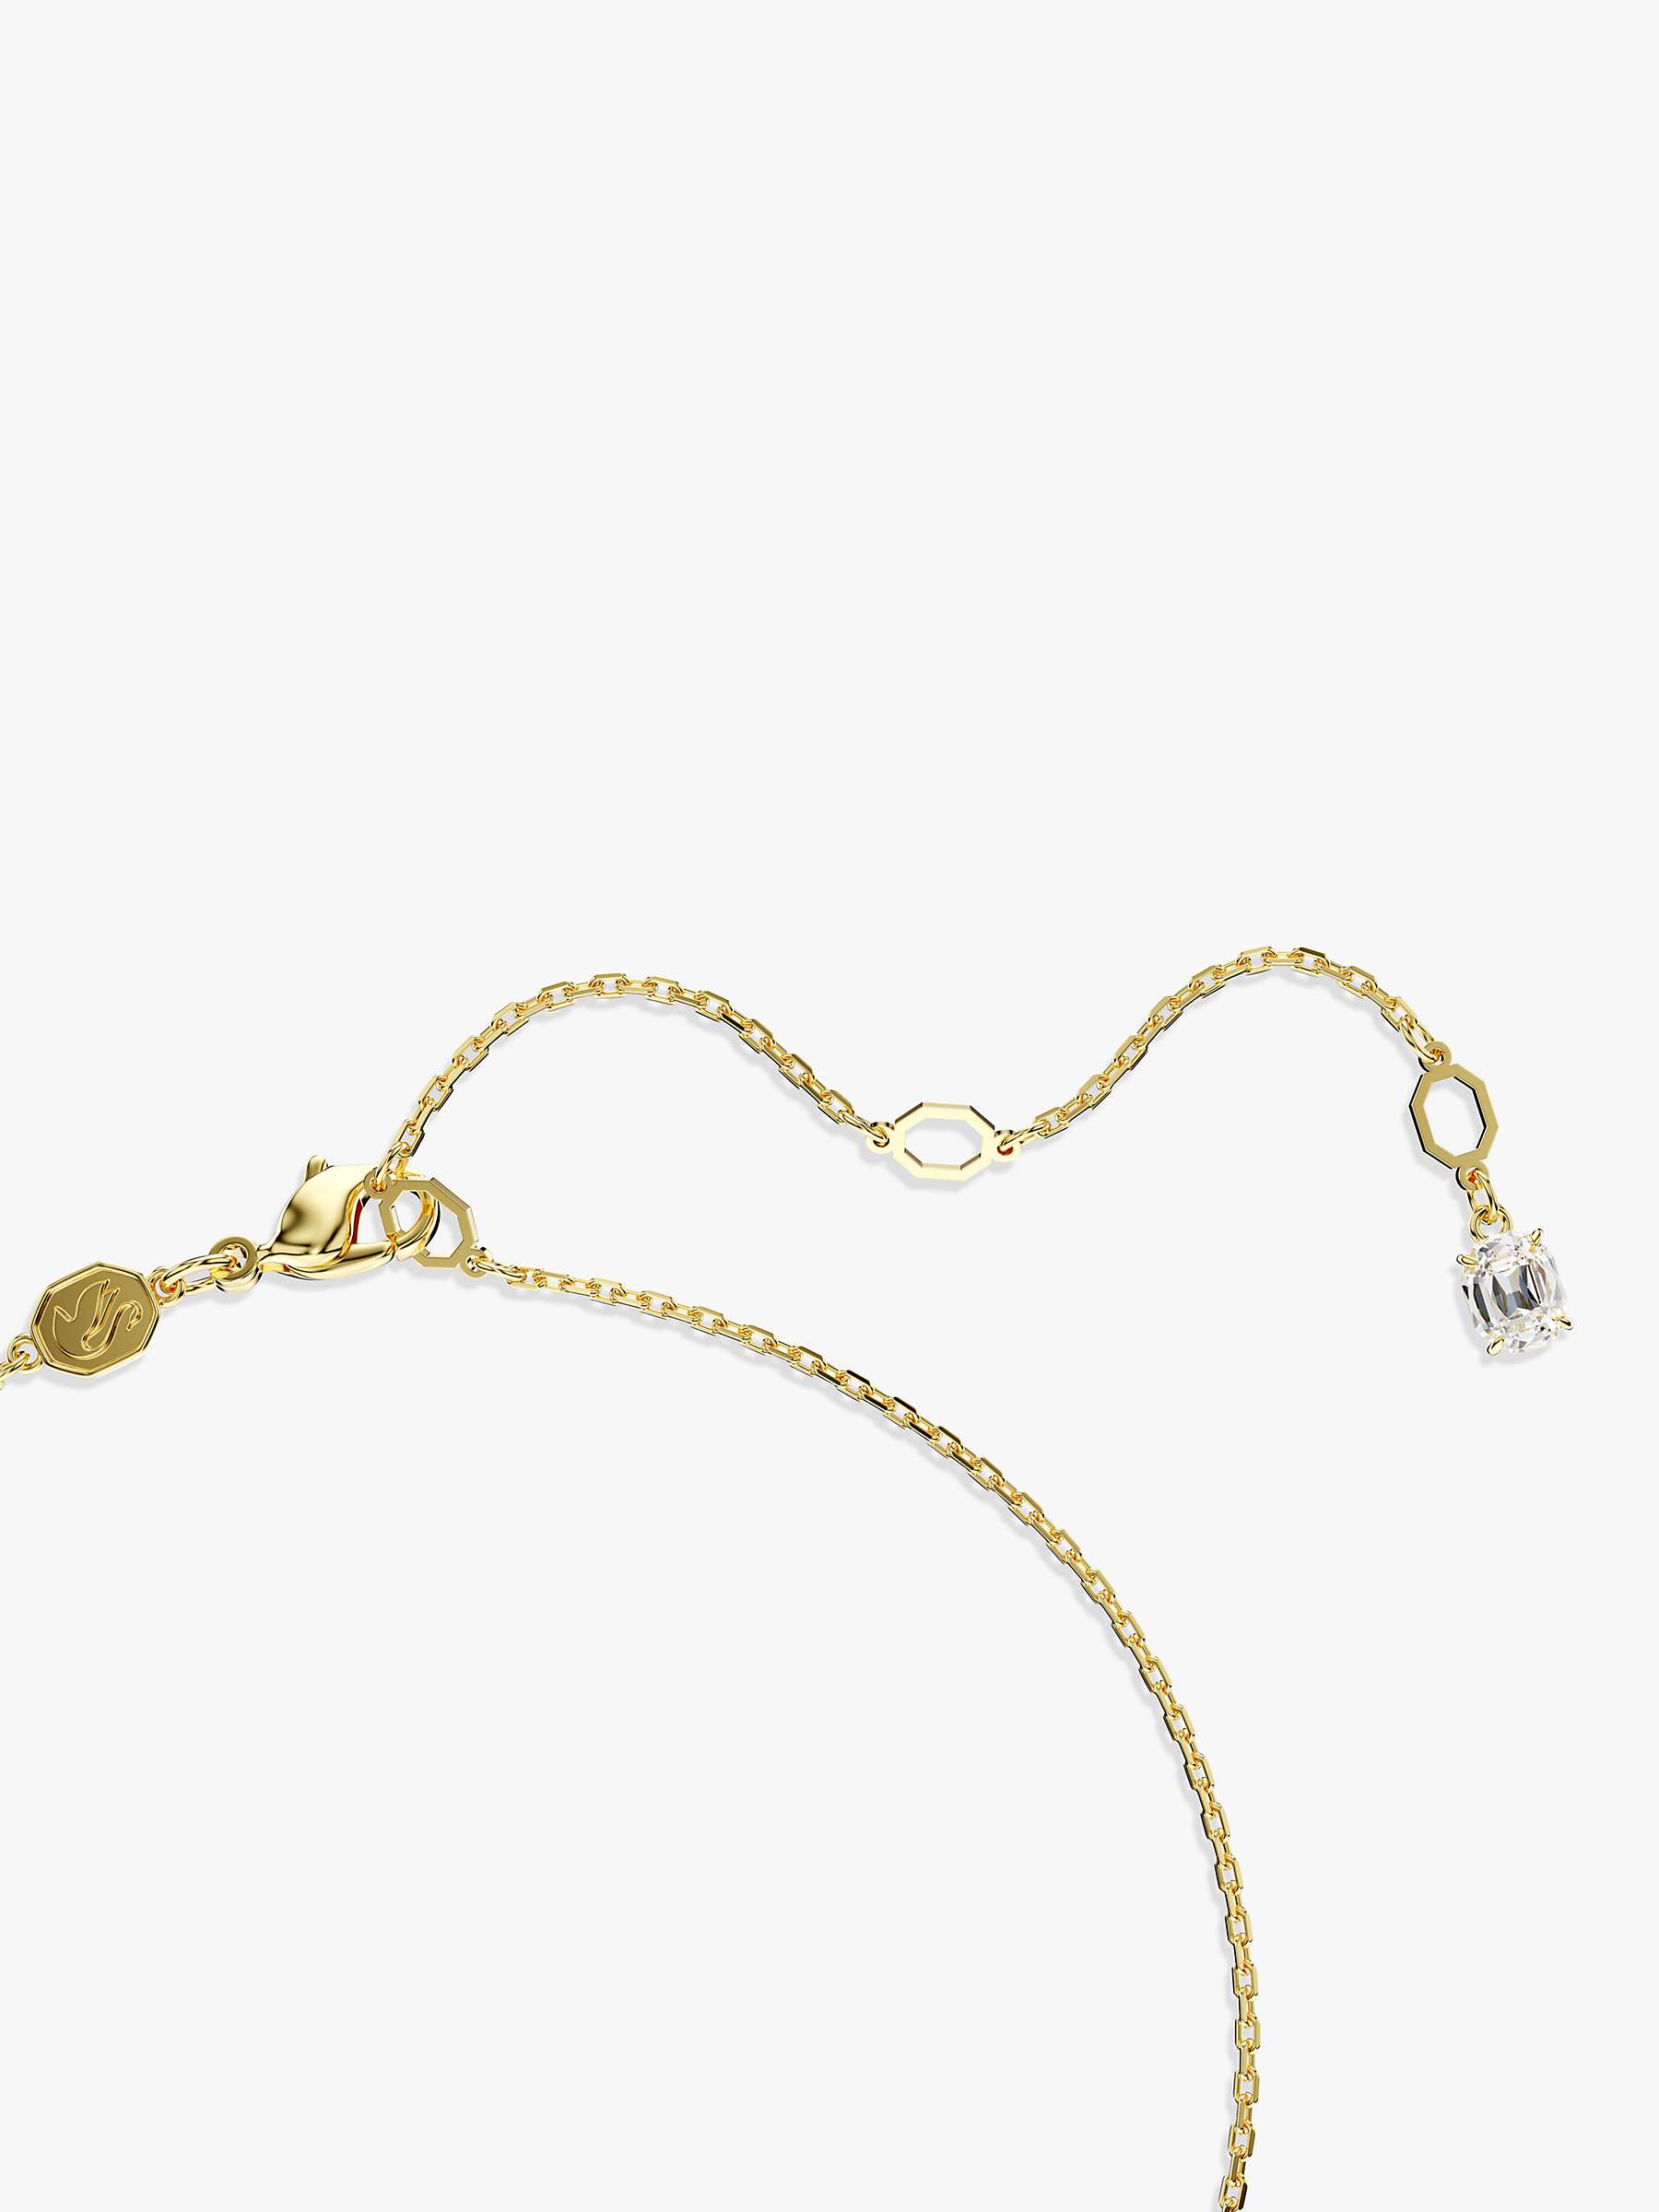 Buy Swarovski Imber Crystal Pendant Necklace, Gold Online at johnlewis.com